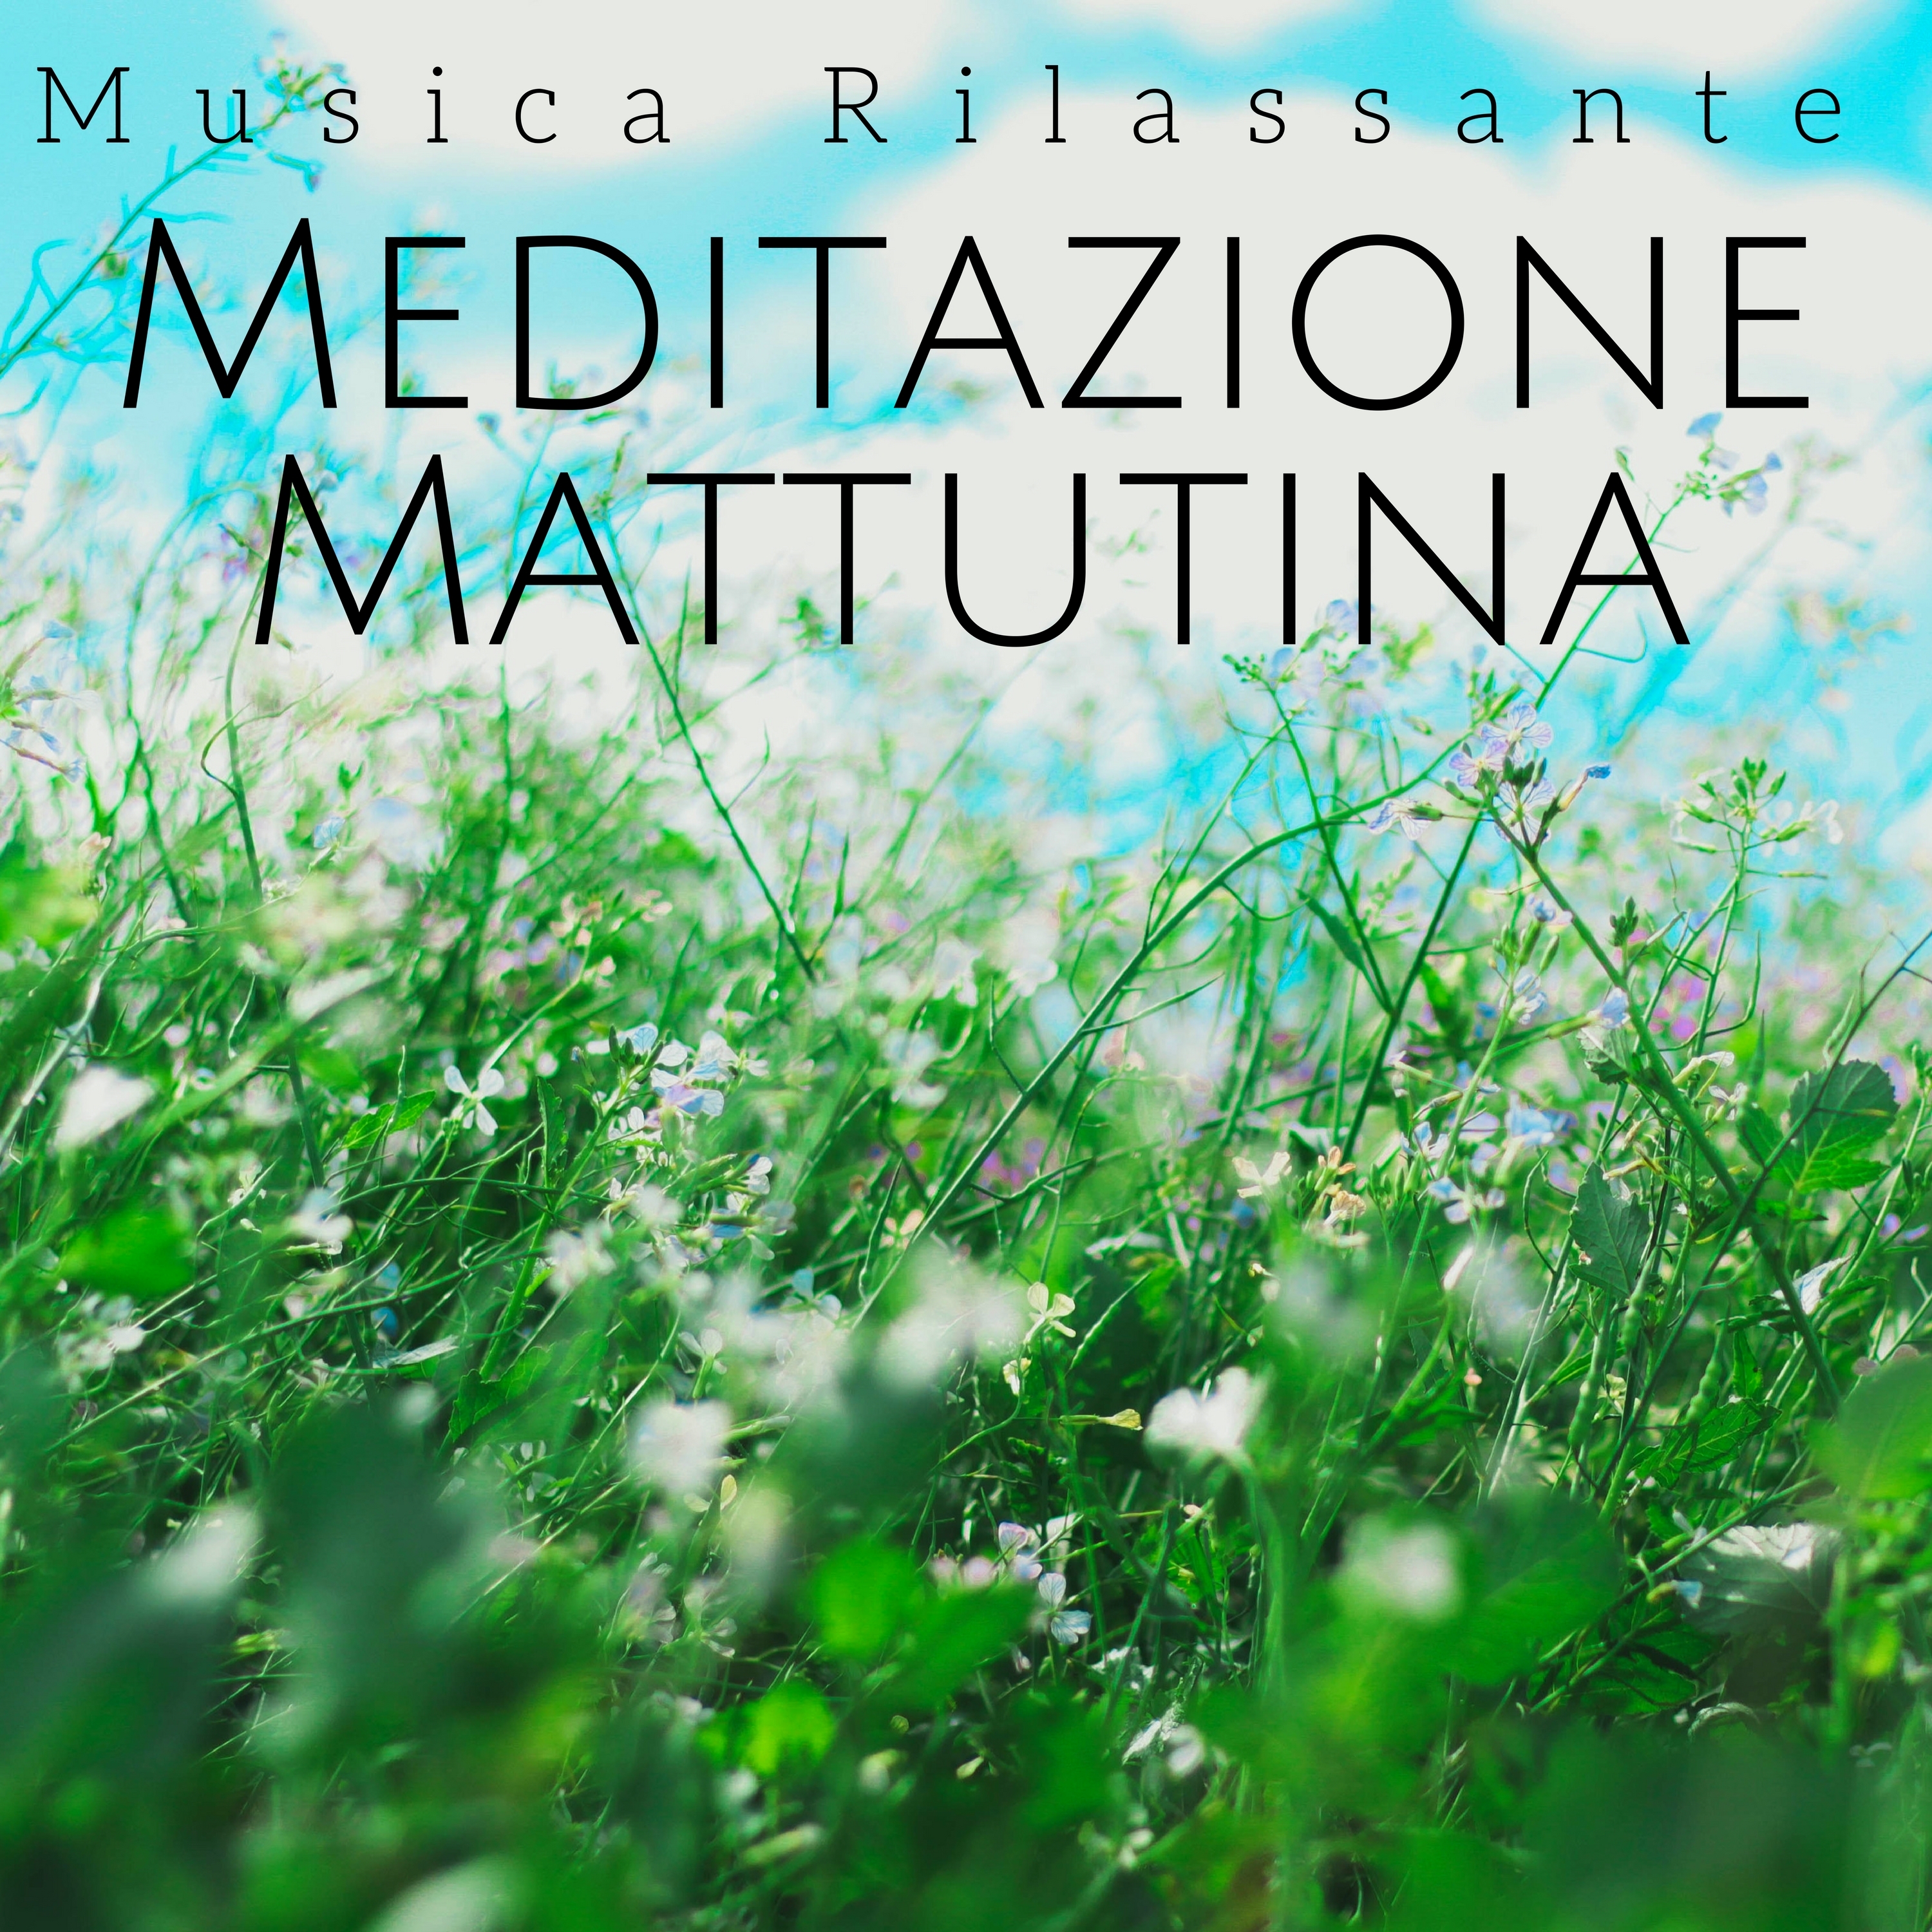 Meditazione Mattutina - Musica Rilassante New Age Calmante, Rilassamento dello Spirito e del Corpo, Energia Positiva con Suoni della Natura